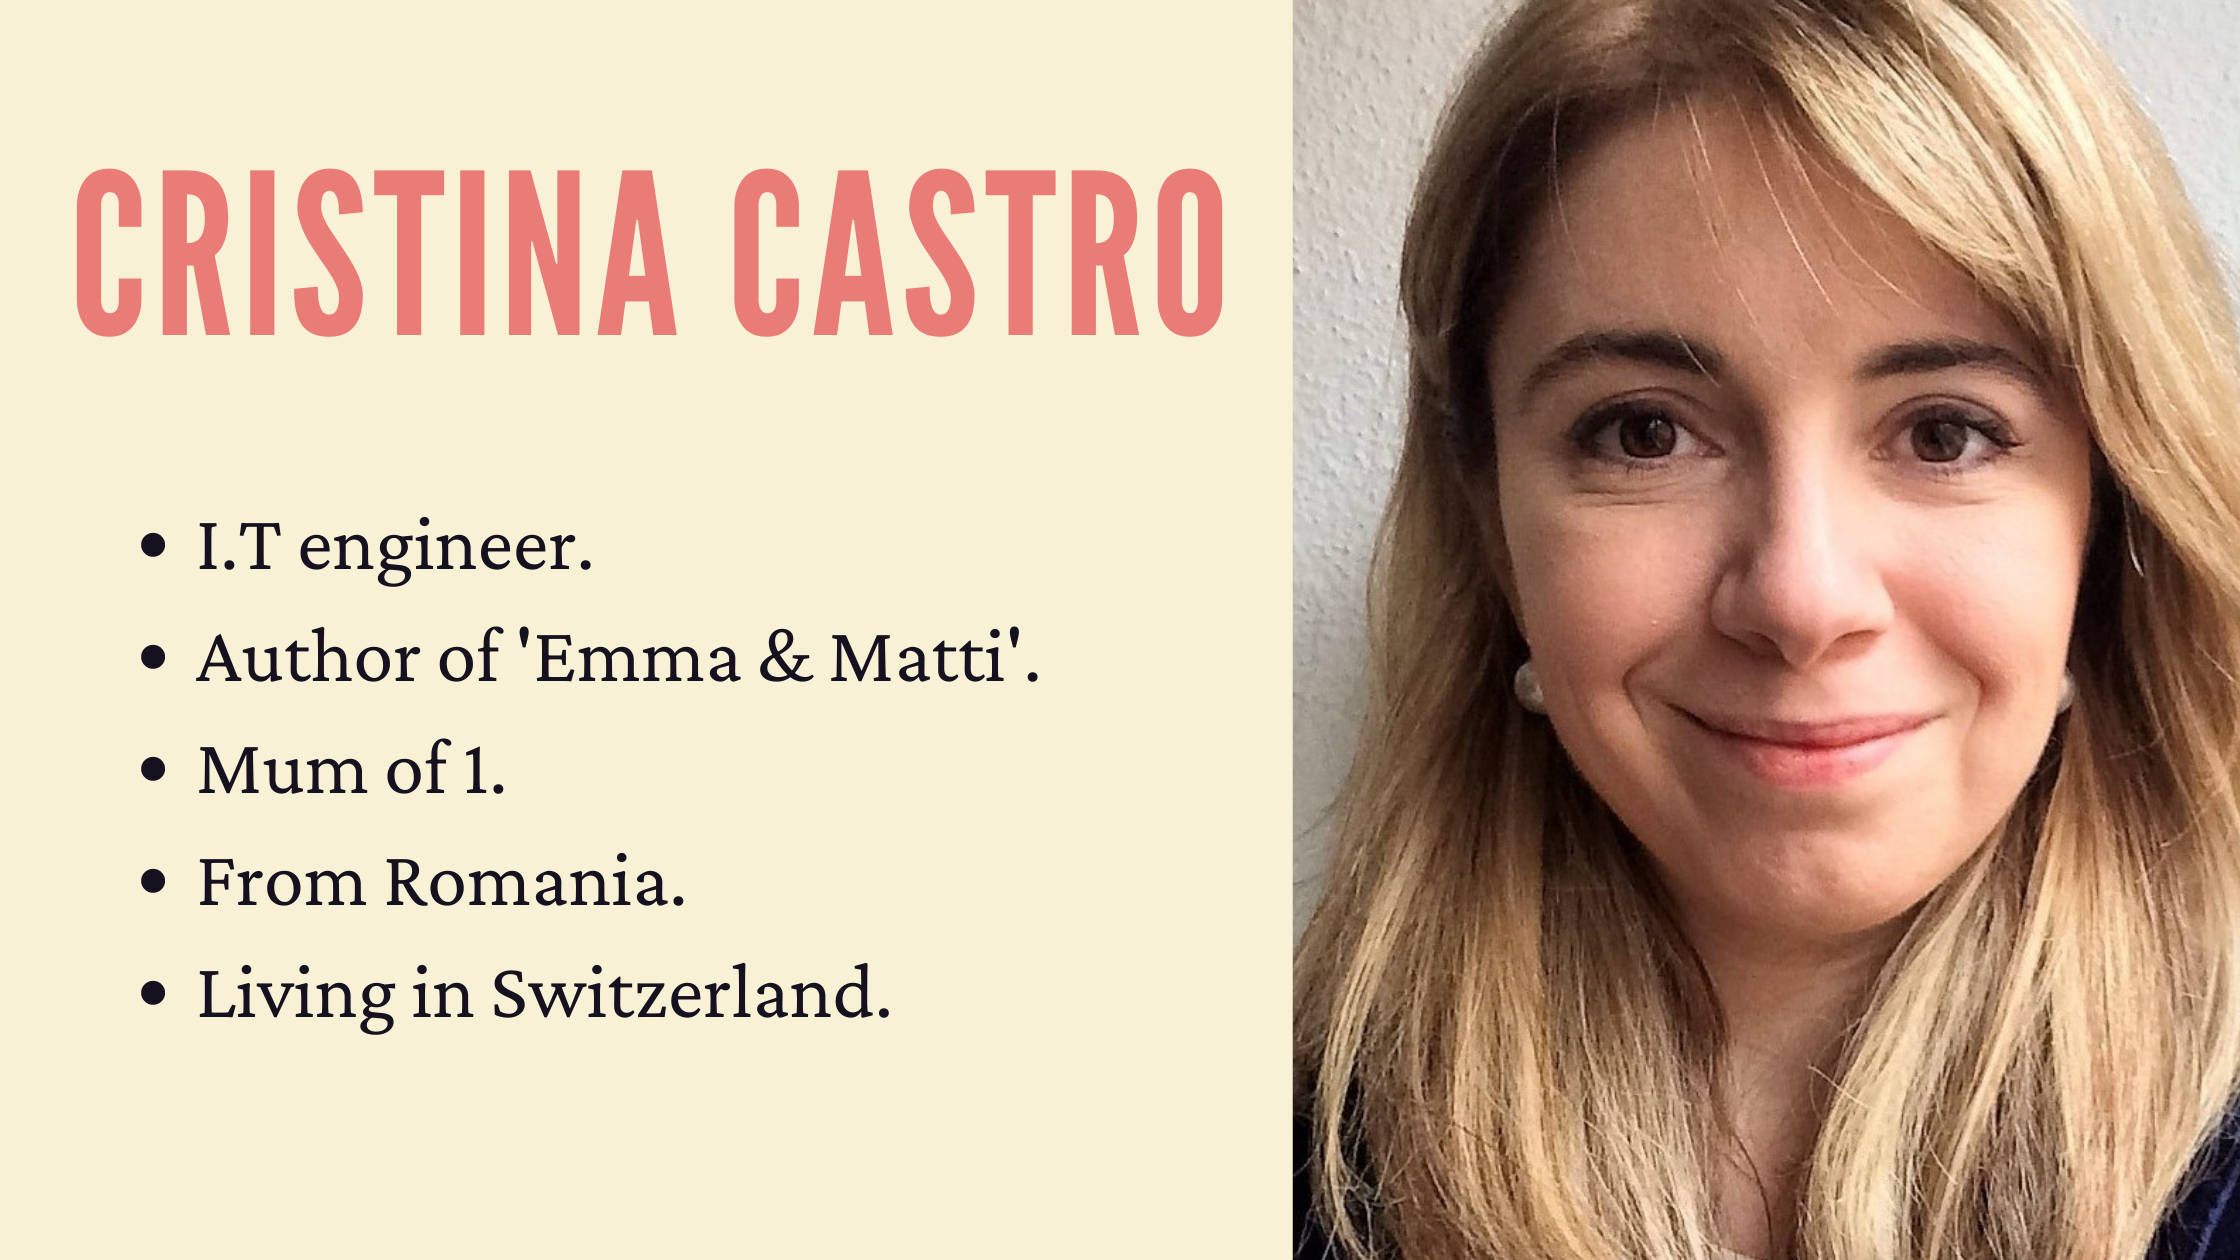 You’ve Got a Friend in Me: Meet Cristina Castro.